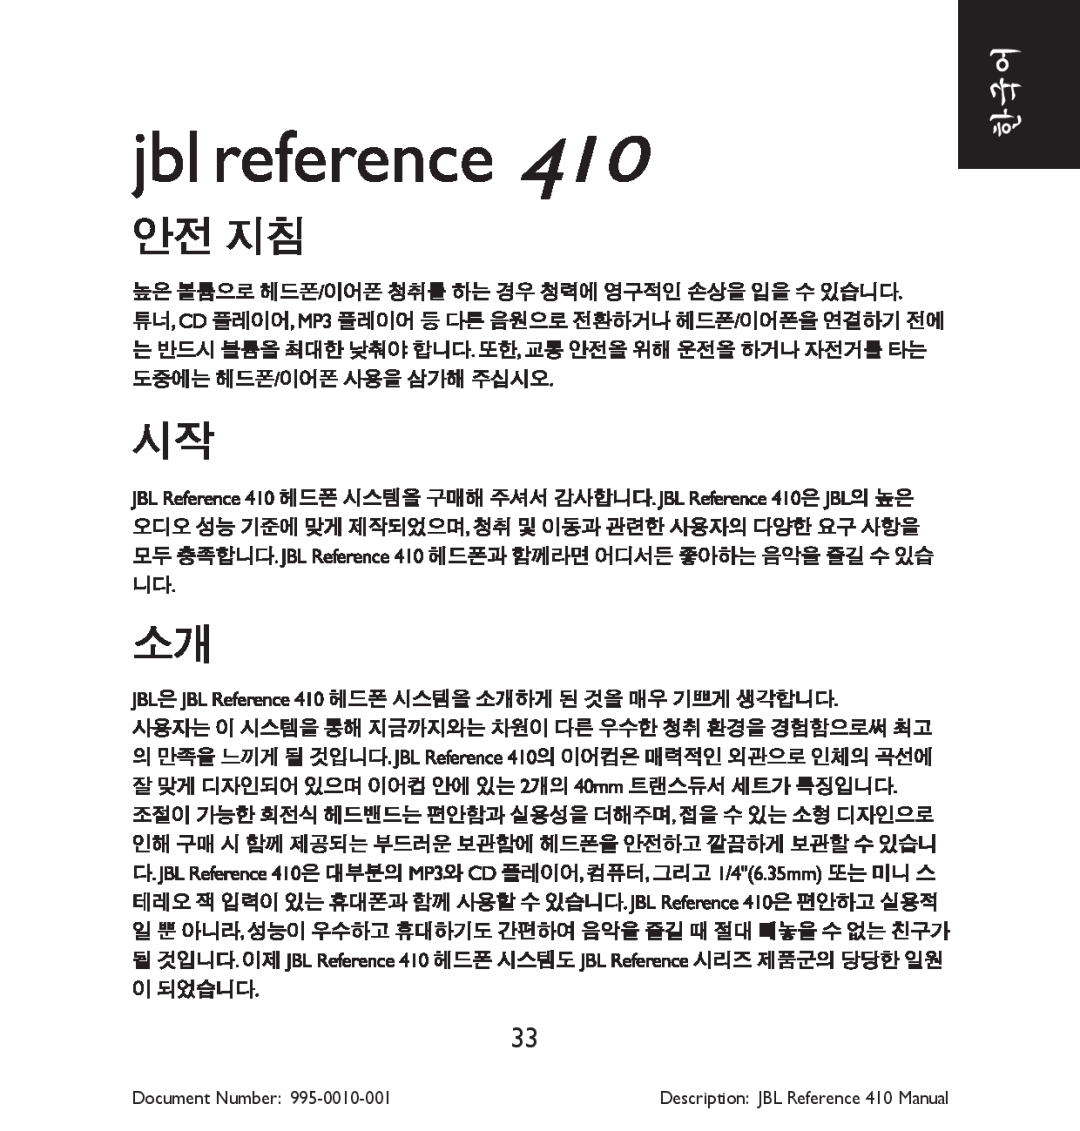 JBL manual Document Number, Description JBL Reference 410 Manual 